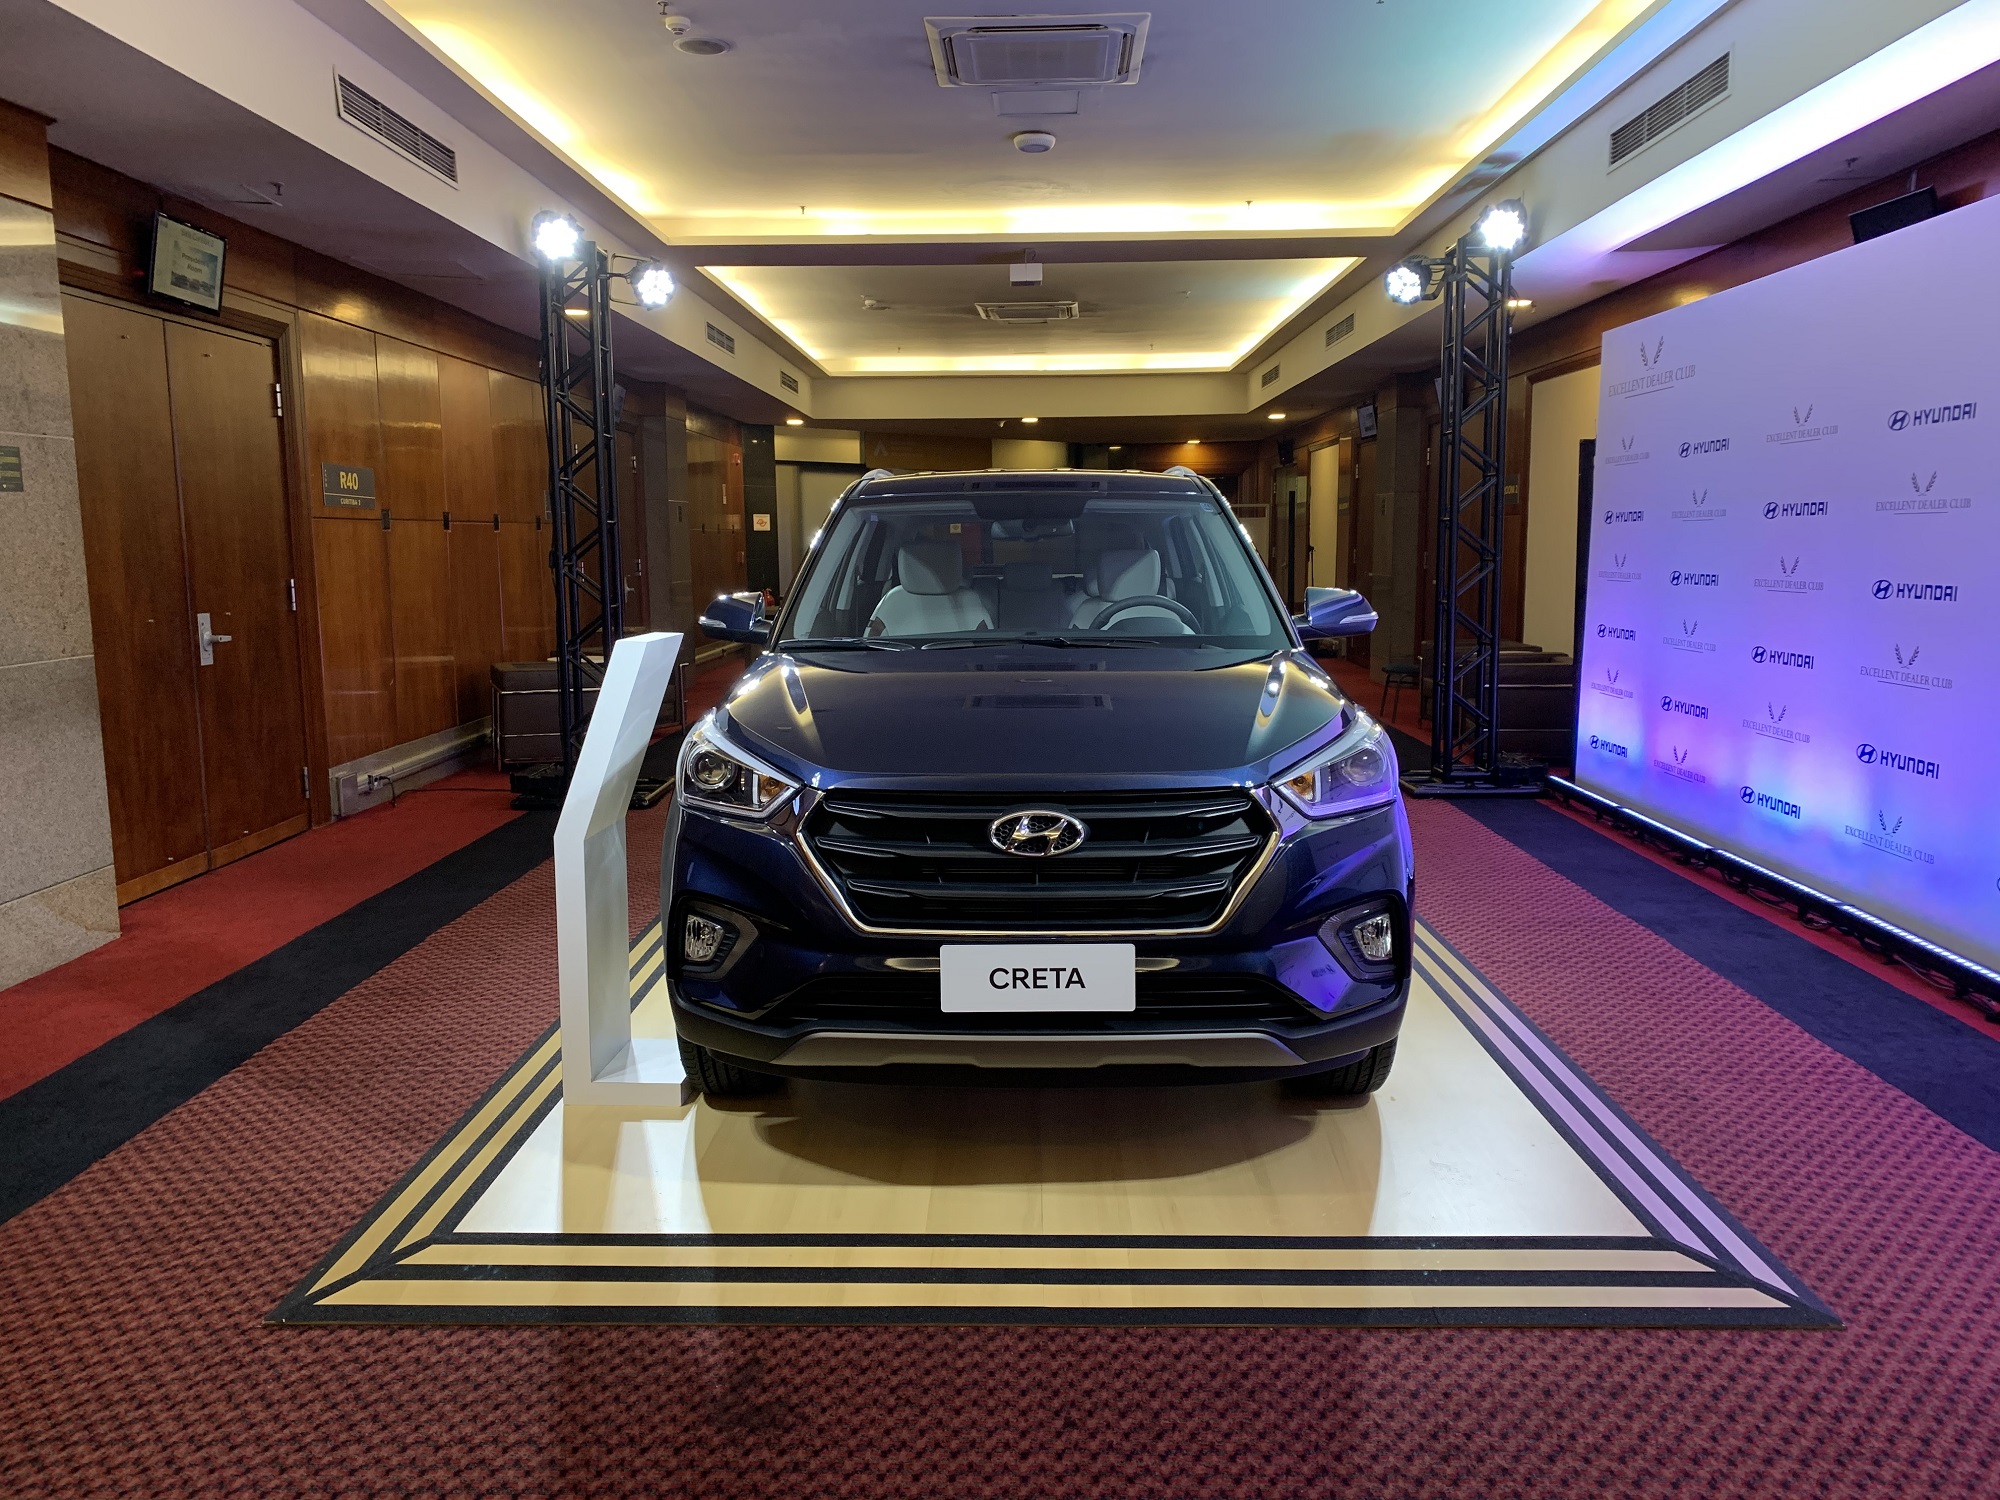  Utilitário esportivo Hyundai Creta volta a oferecer um tom de azul